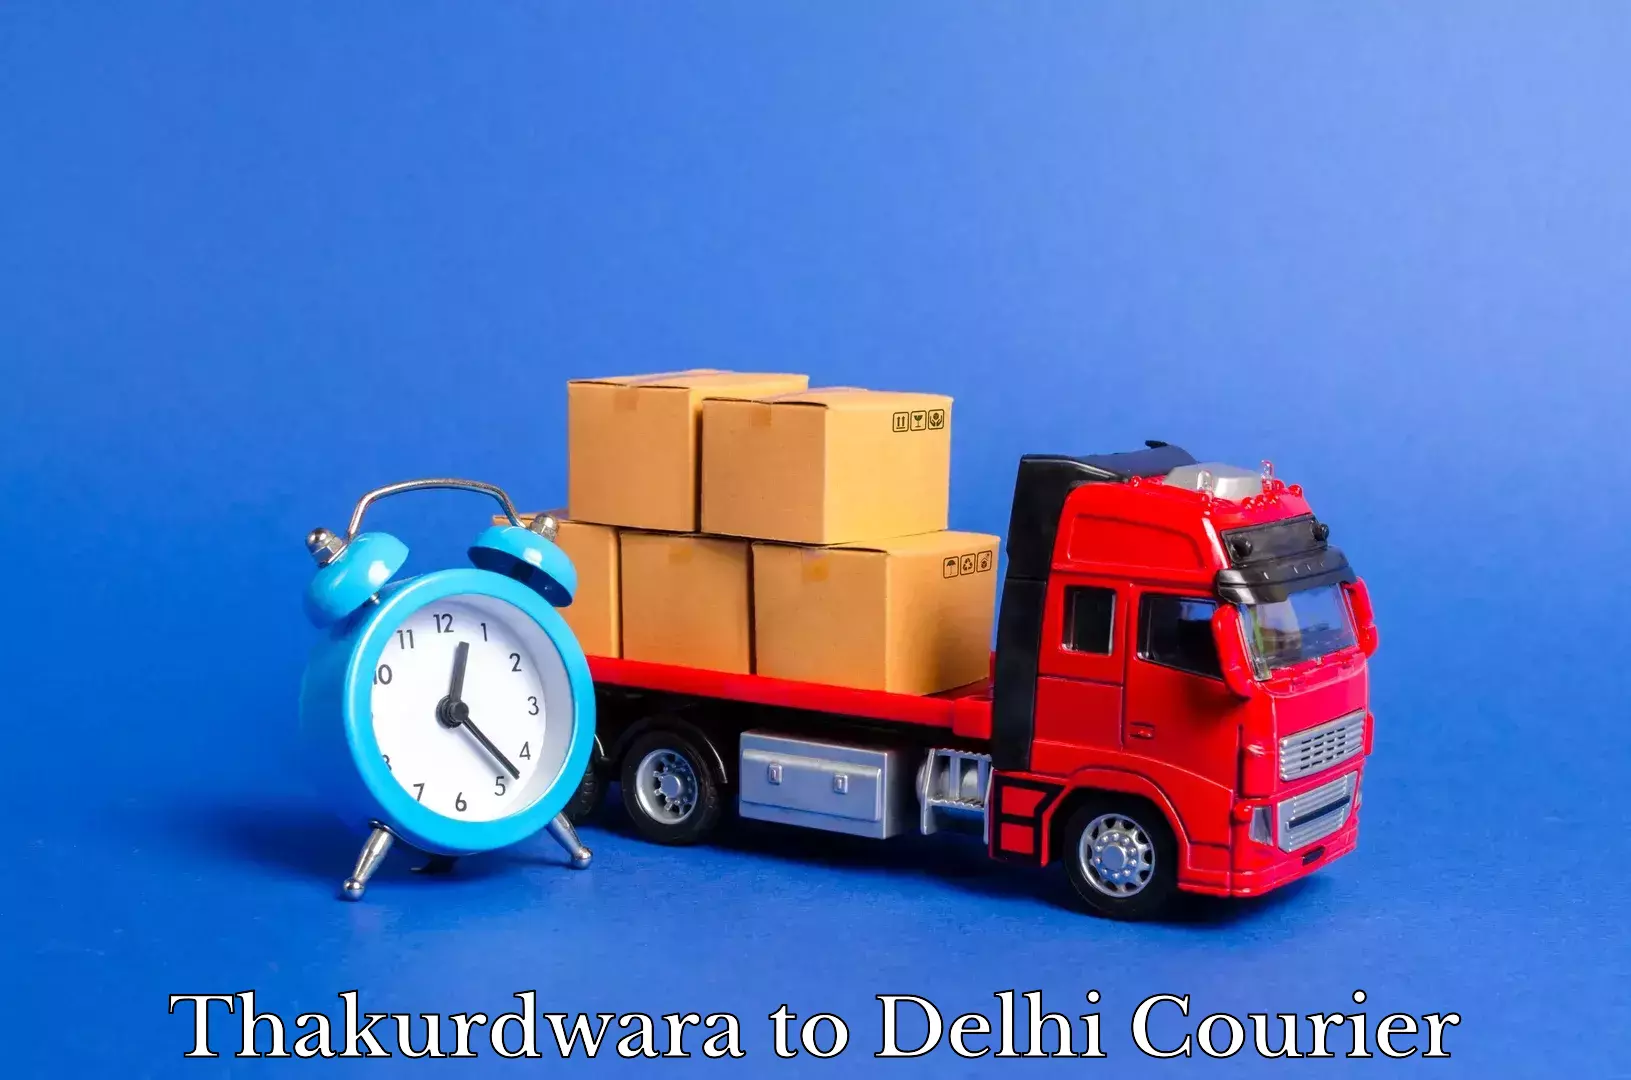 Furniture moving services Thakurdwara to NIT Delhi